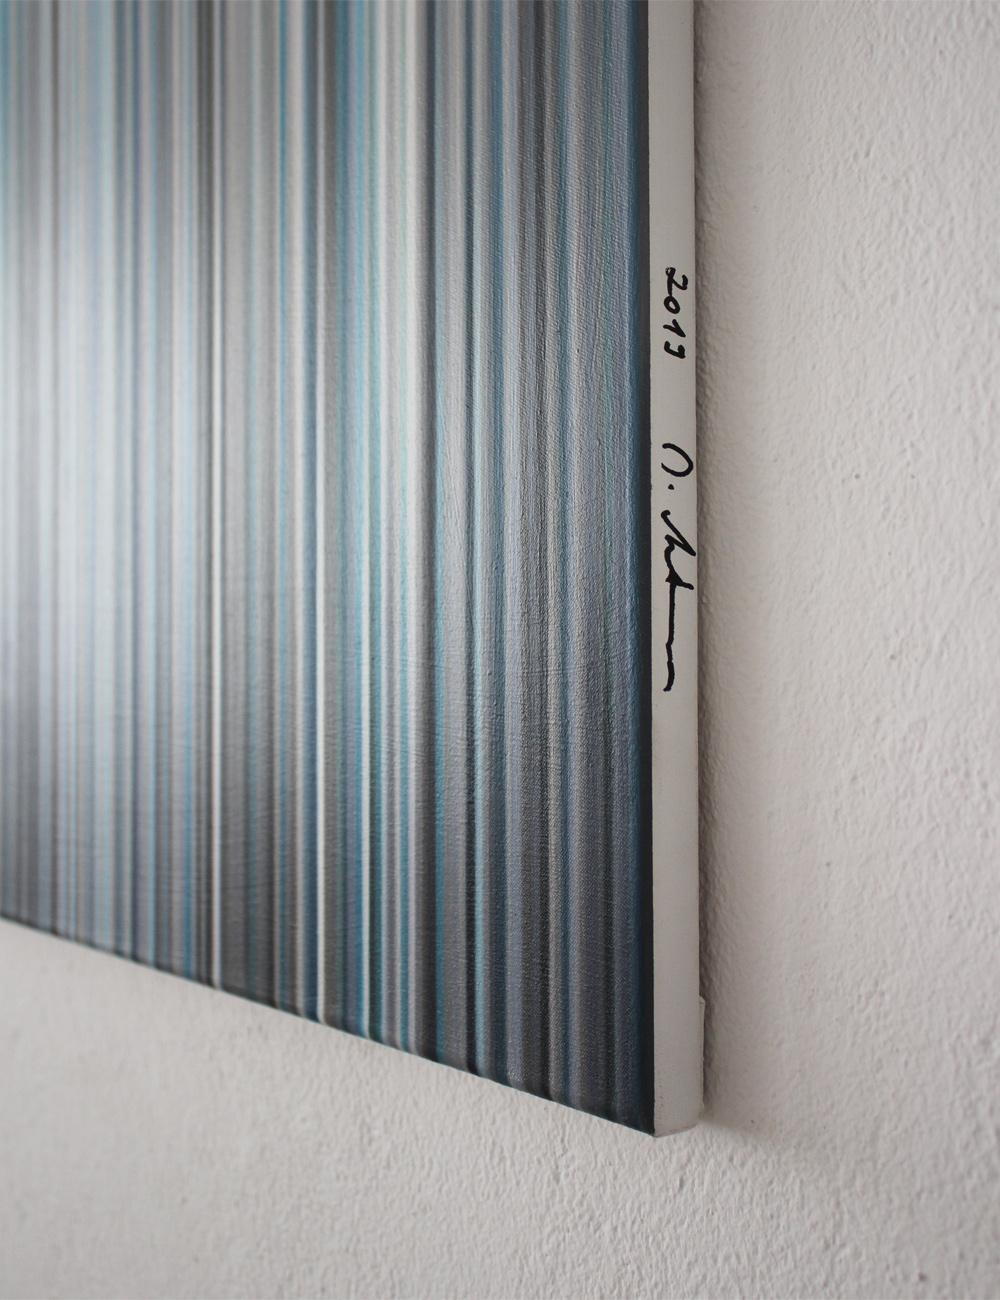 Light'n'Lines No.01 von Doris Marten - Zeitgenössische abstrakte Malerei, blaue Linien im Angebot 2